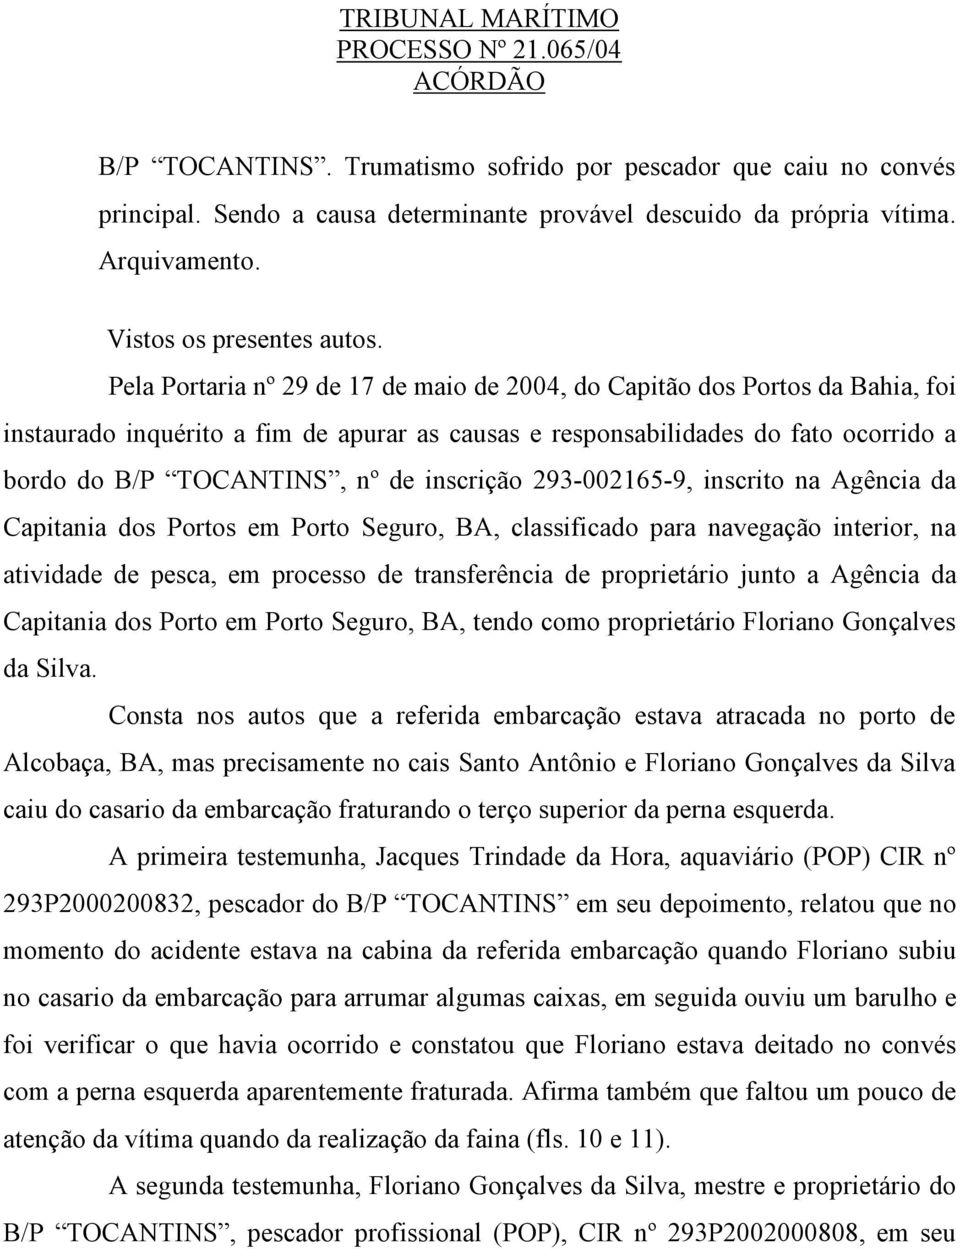 Pela Portaria nº 29 de 17 de maio de 2004, do Capitão dos Portos da Bahia, foi instaurado inquérito a fim de apurar as causas e responsabilidades do fato ocorrido a bordo do B/P TOCANTINS, nº de